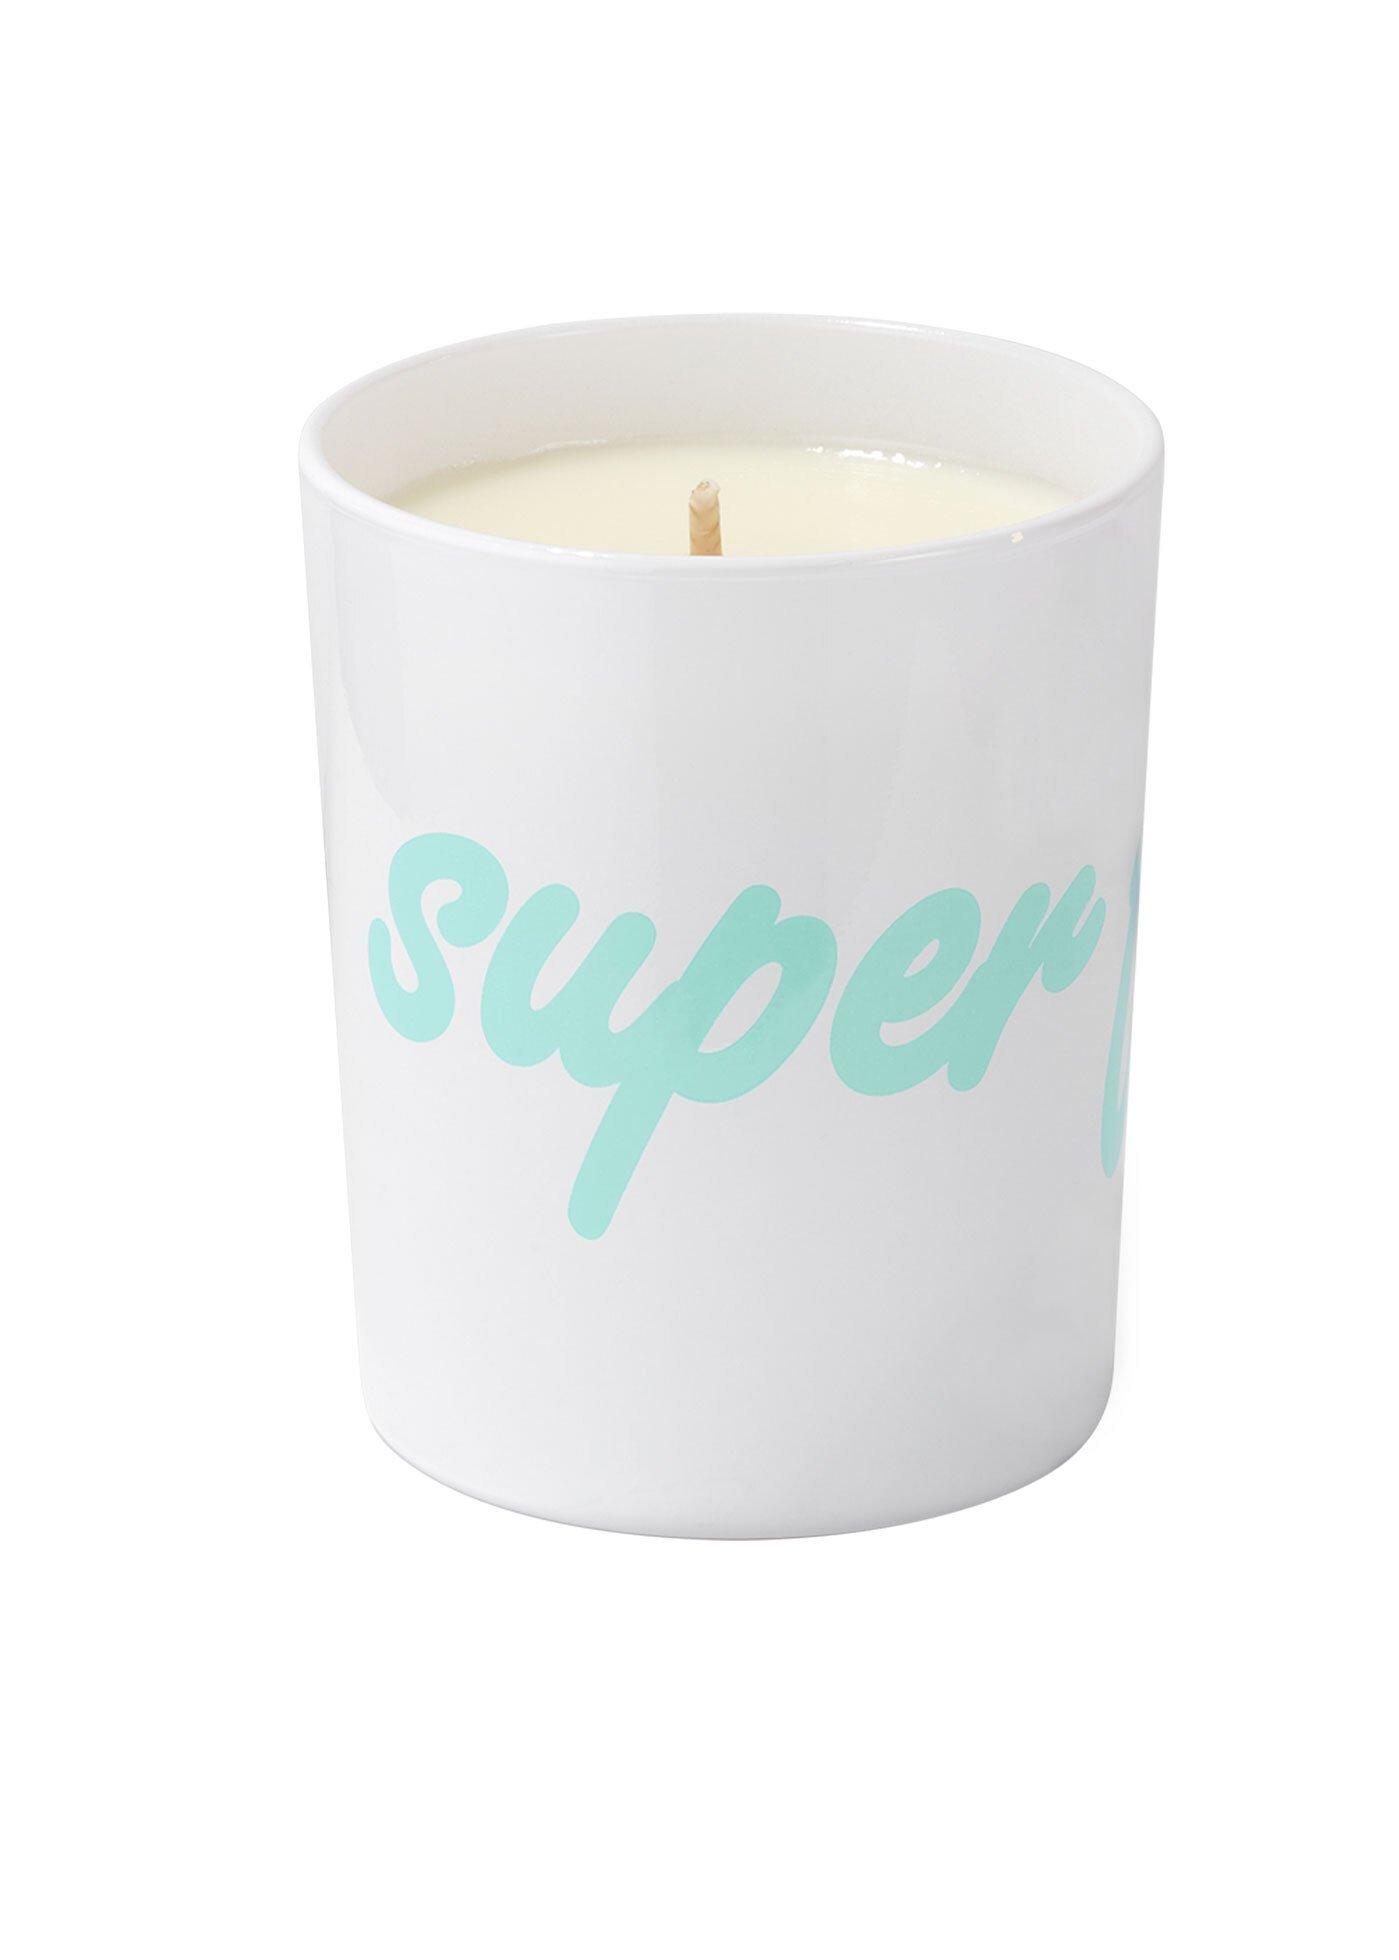 Kerzon Bougie Fragranced Candle - Super Frais  